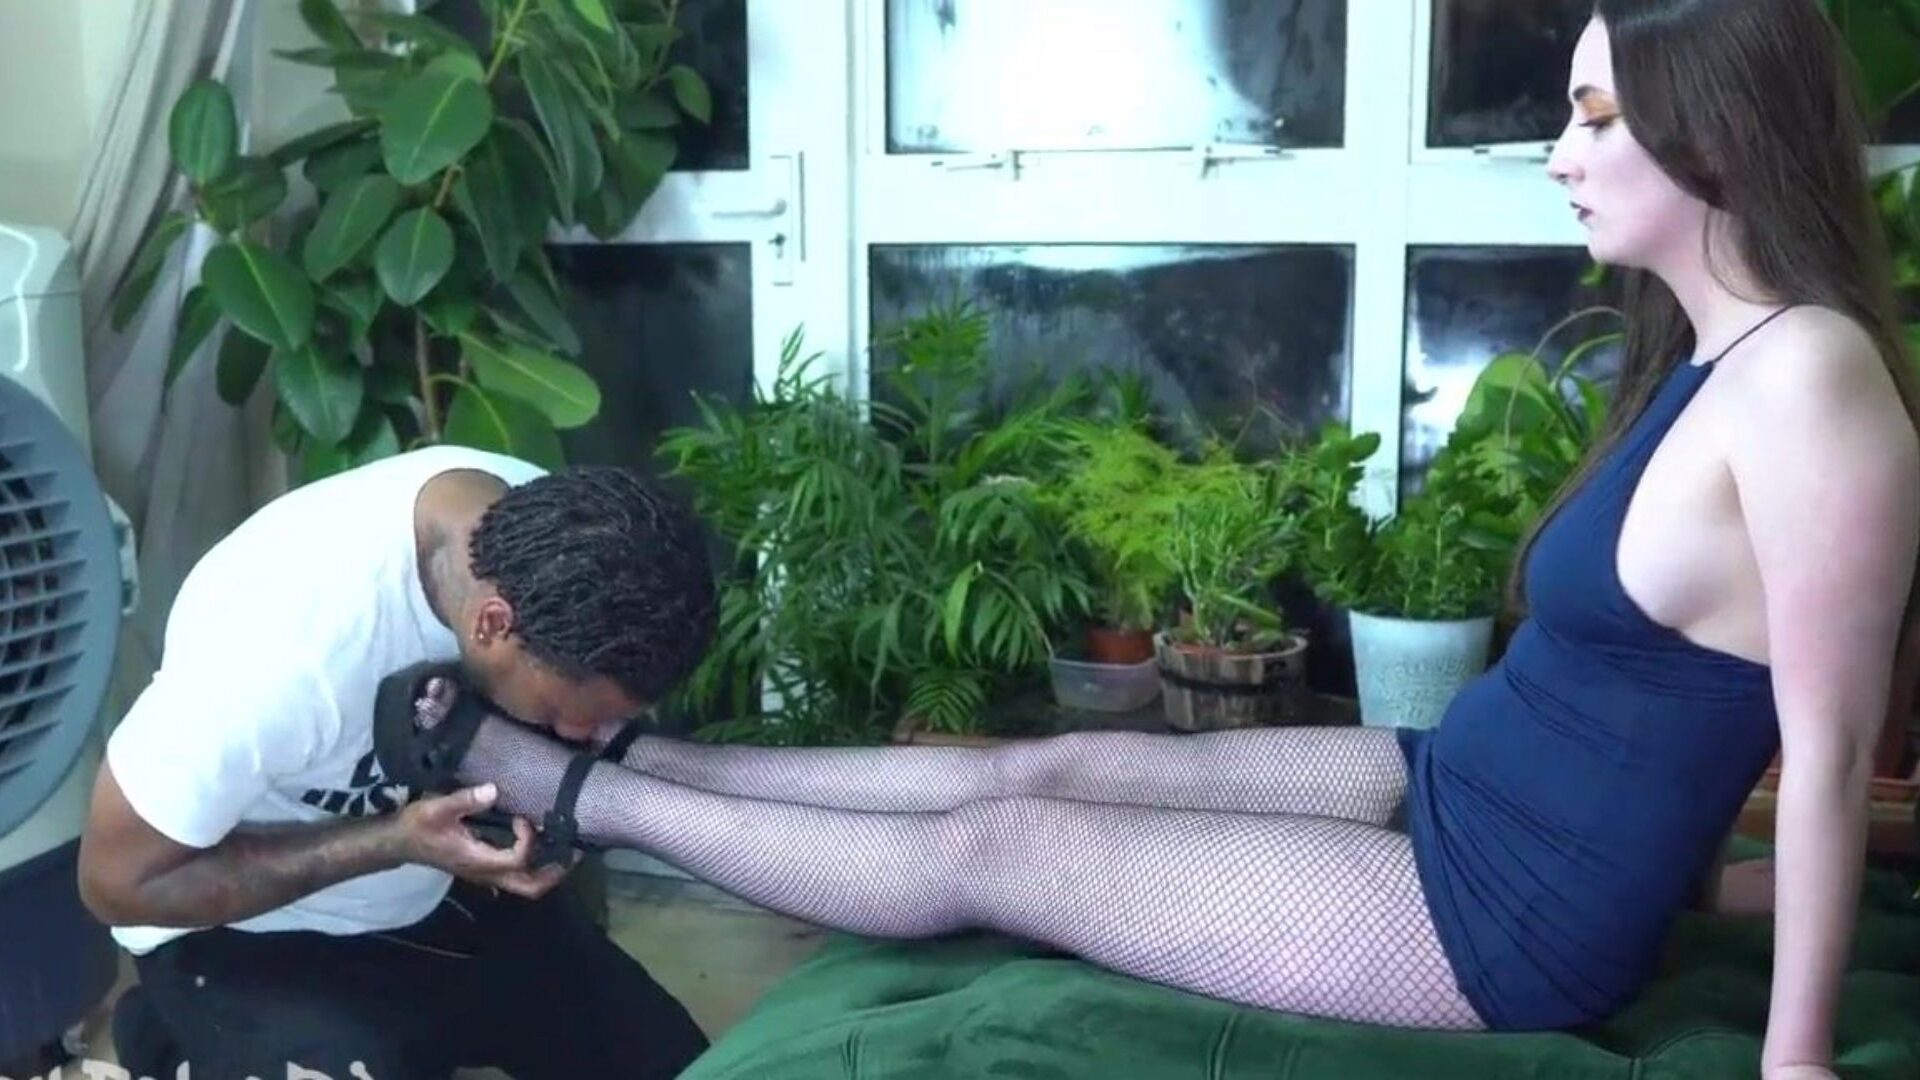 prévia: filmando um amigo lambendo o esperma das namoradas e adorando os pés dela enquanto aquela gata faz sexo oral em seu pau